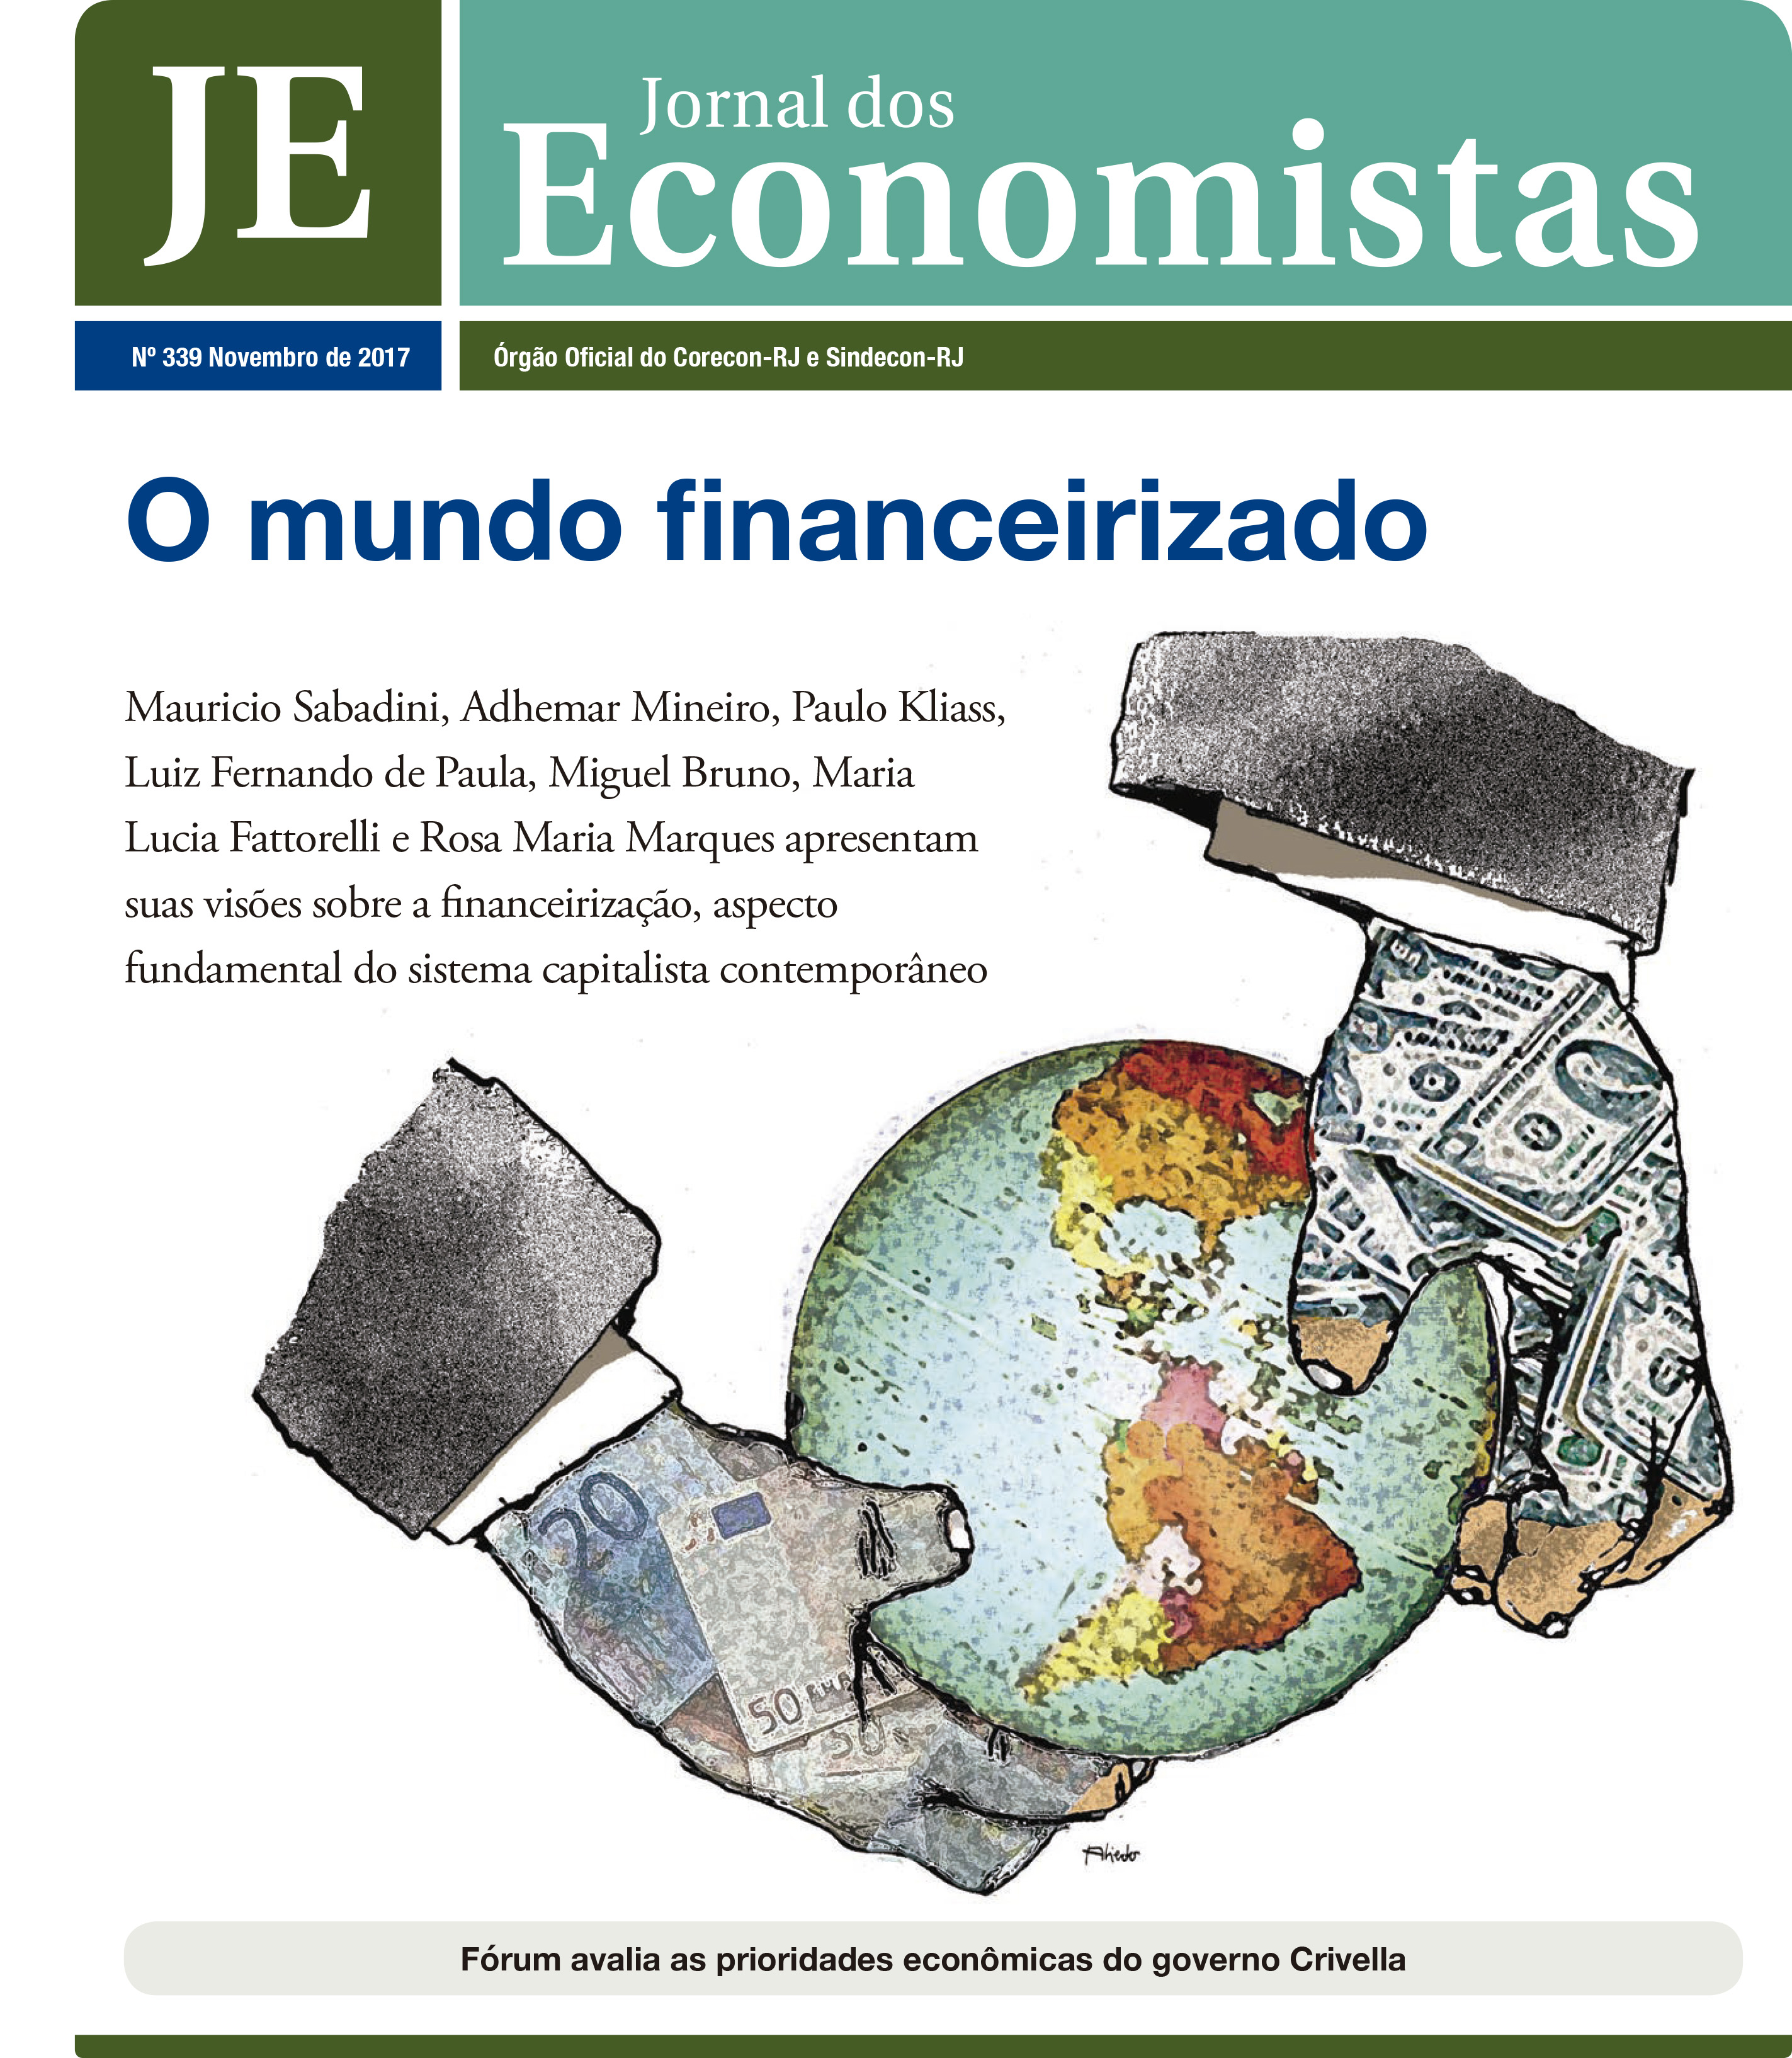 Jornal dos economistas: “Financeirização, Sistema da Dívida e Securitização de Créditos”, Maria Lucia Fattorelli